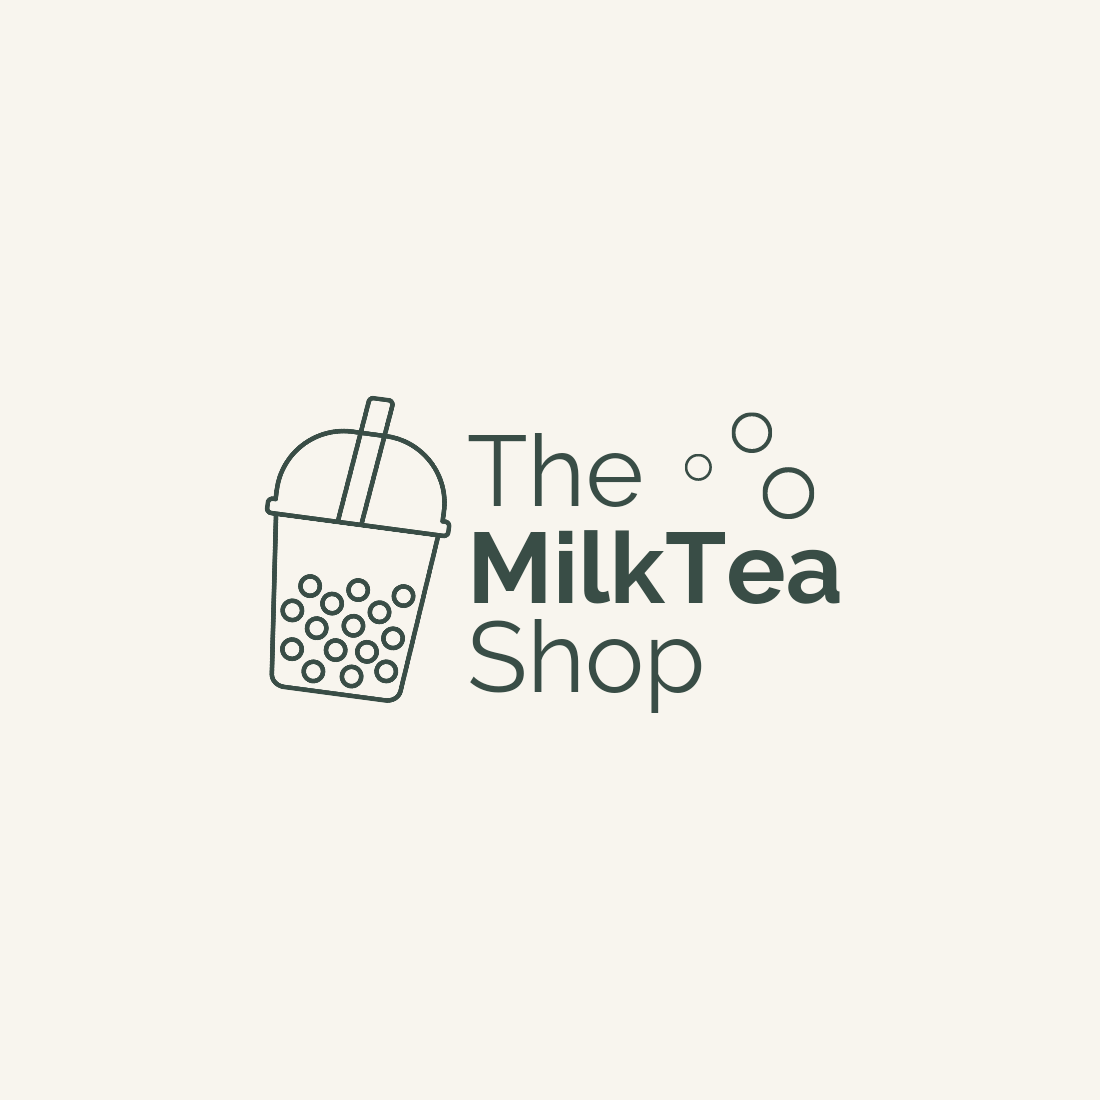 Premium Business Logo Designs Bundle milktea shop.